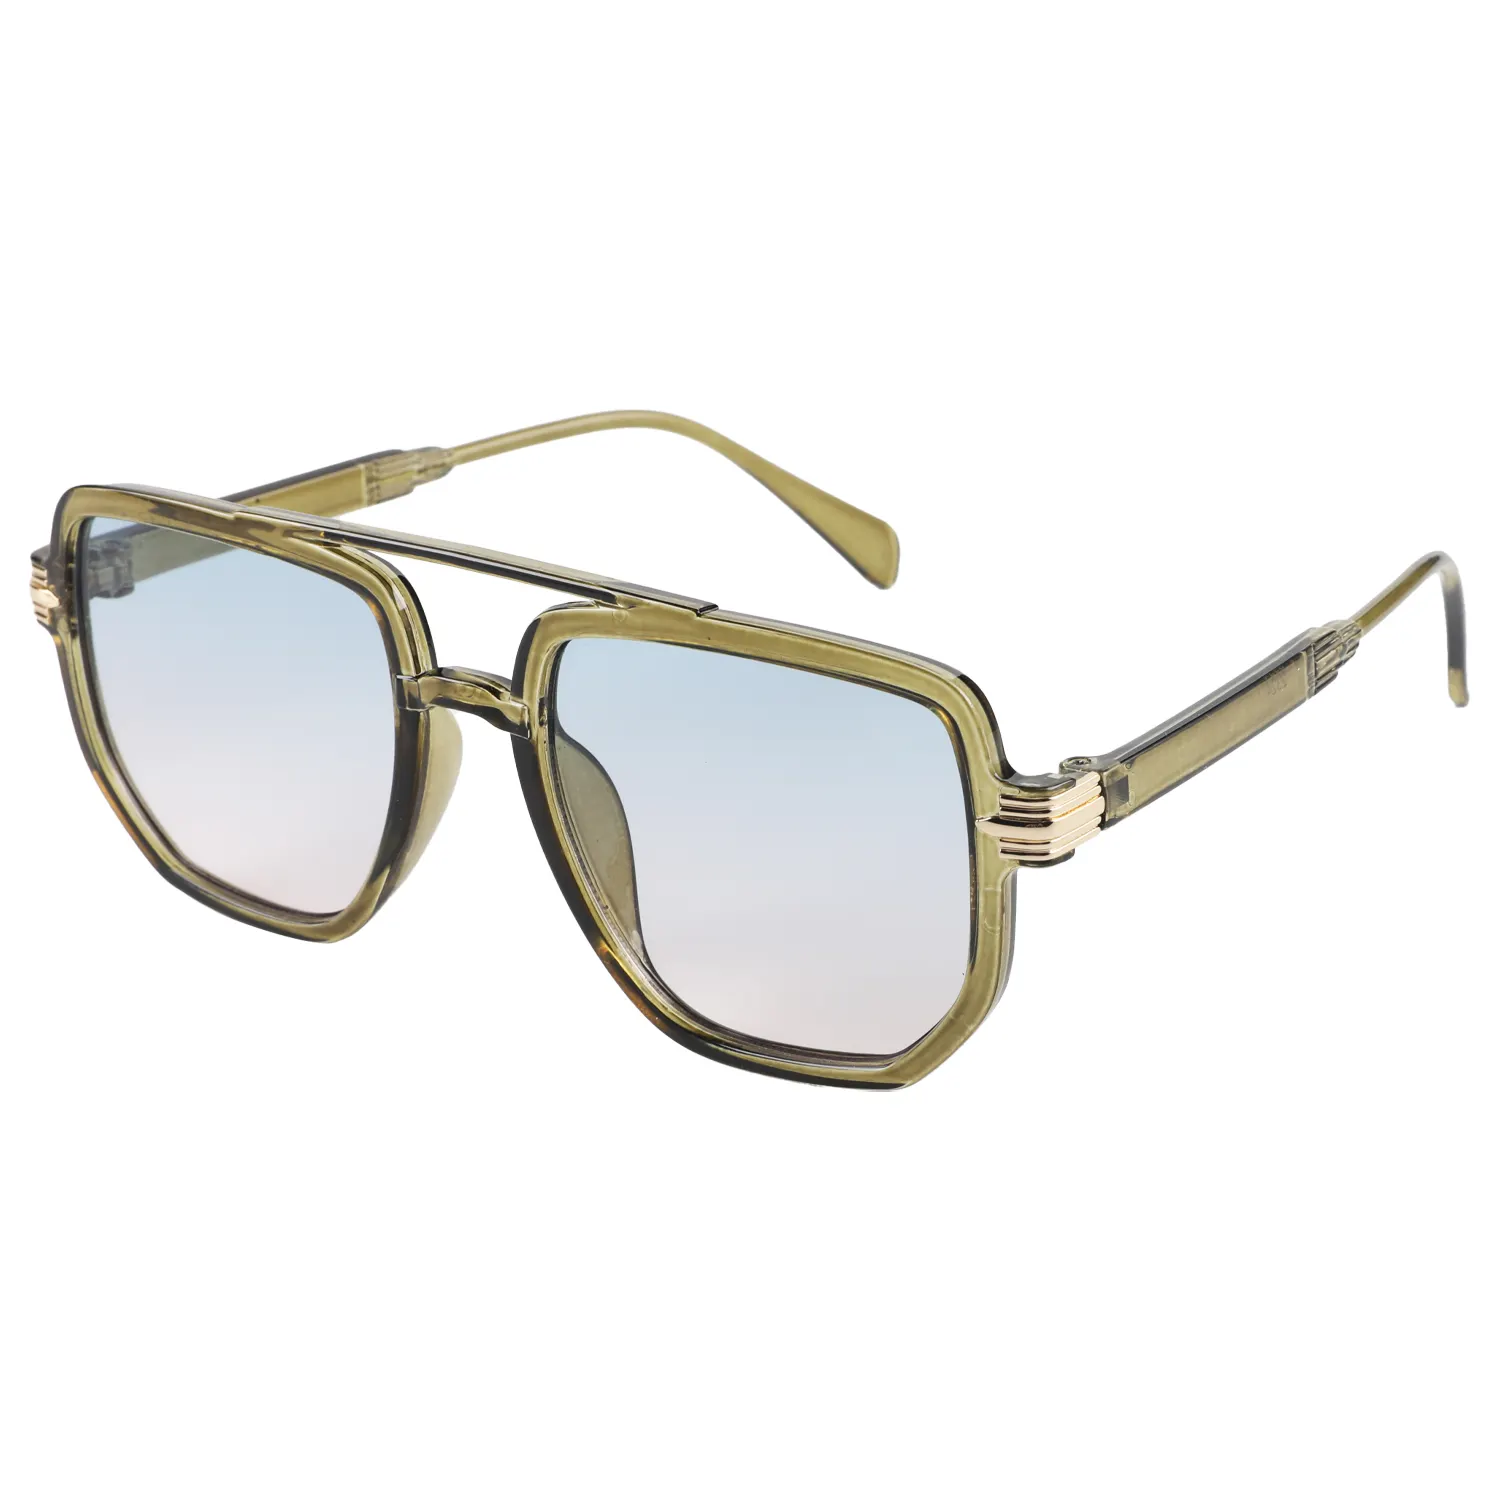 Retro new fashion double beam sunglasses metal decorative sunglasses men's wholesale art square frame mirror casual sunglasses